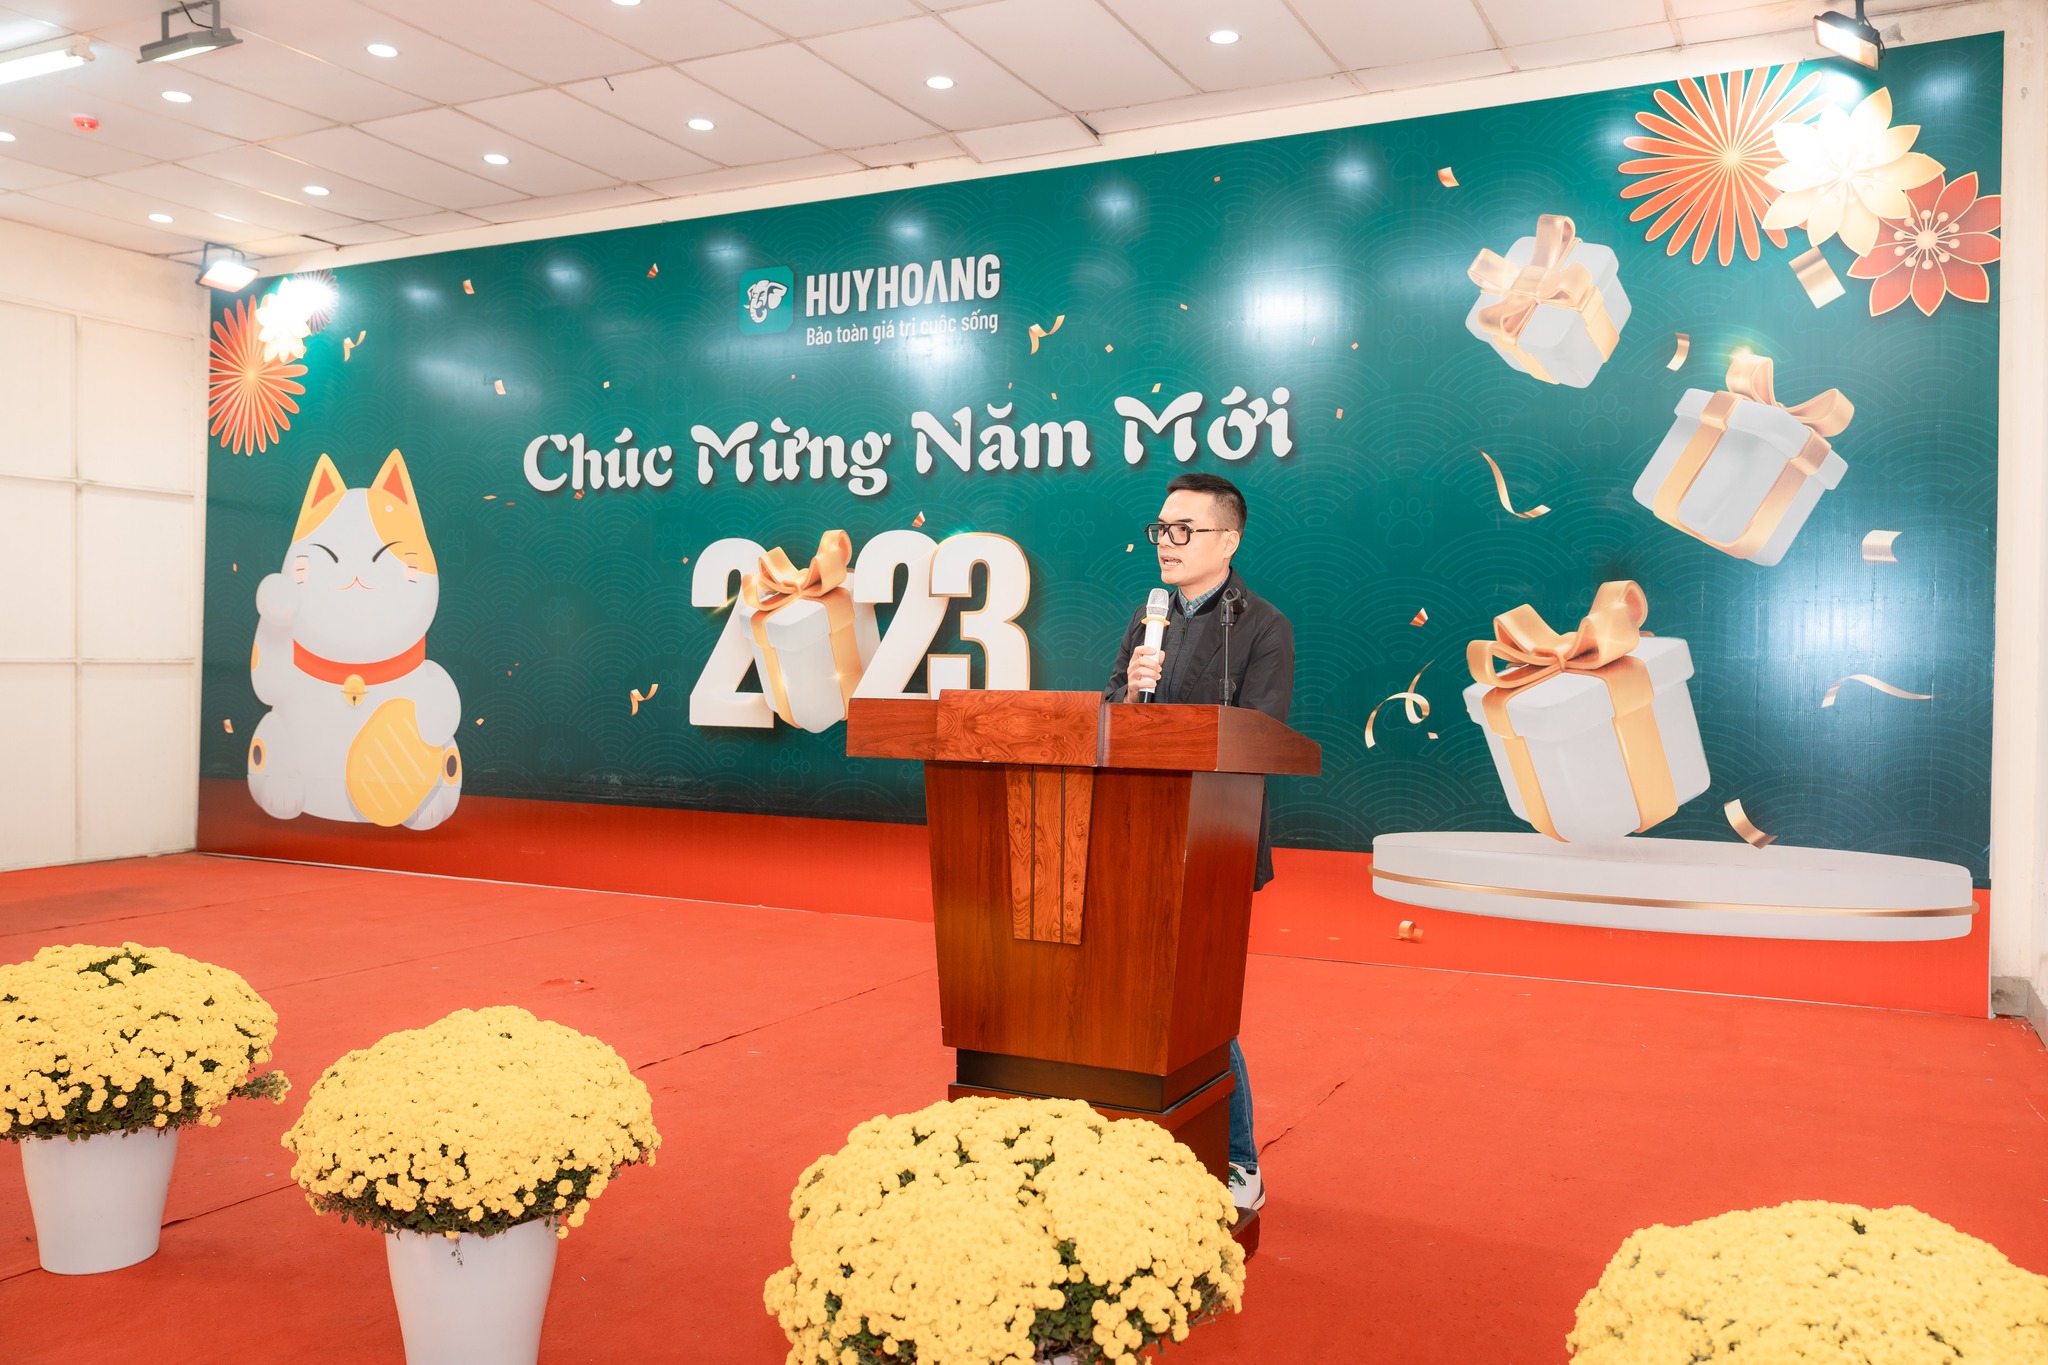 Tổng Giám Đốc Nguyễn Quang Huy phát biểu và chúc mừng năm mới tại buổi lễ